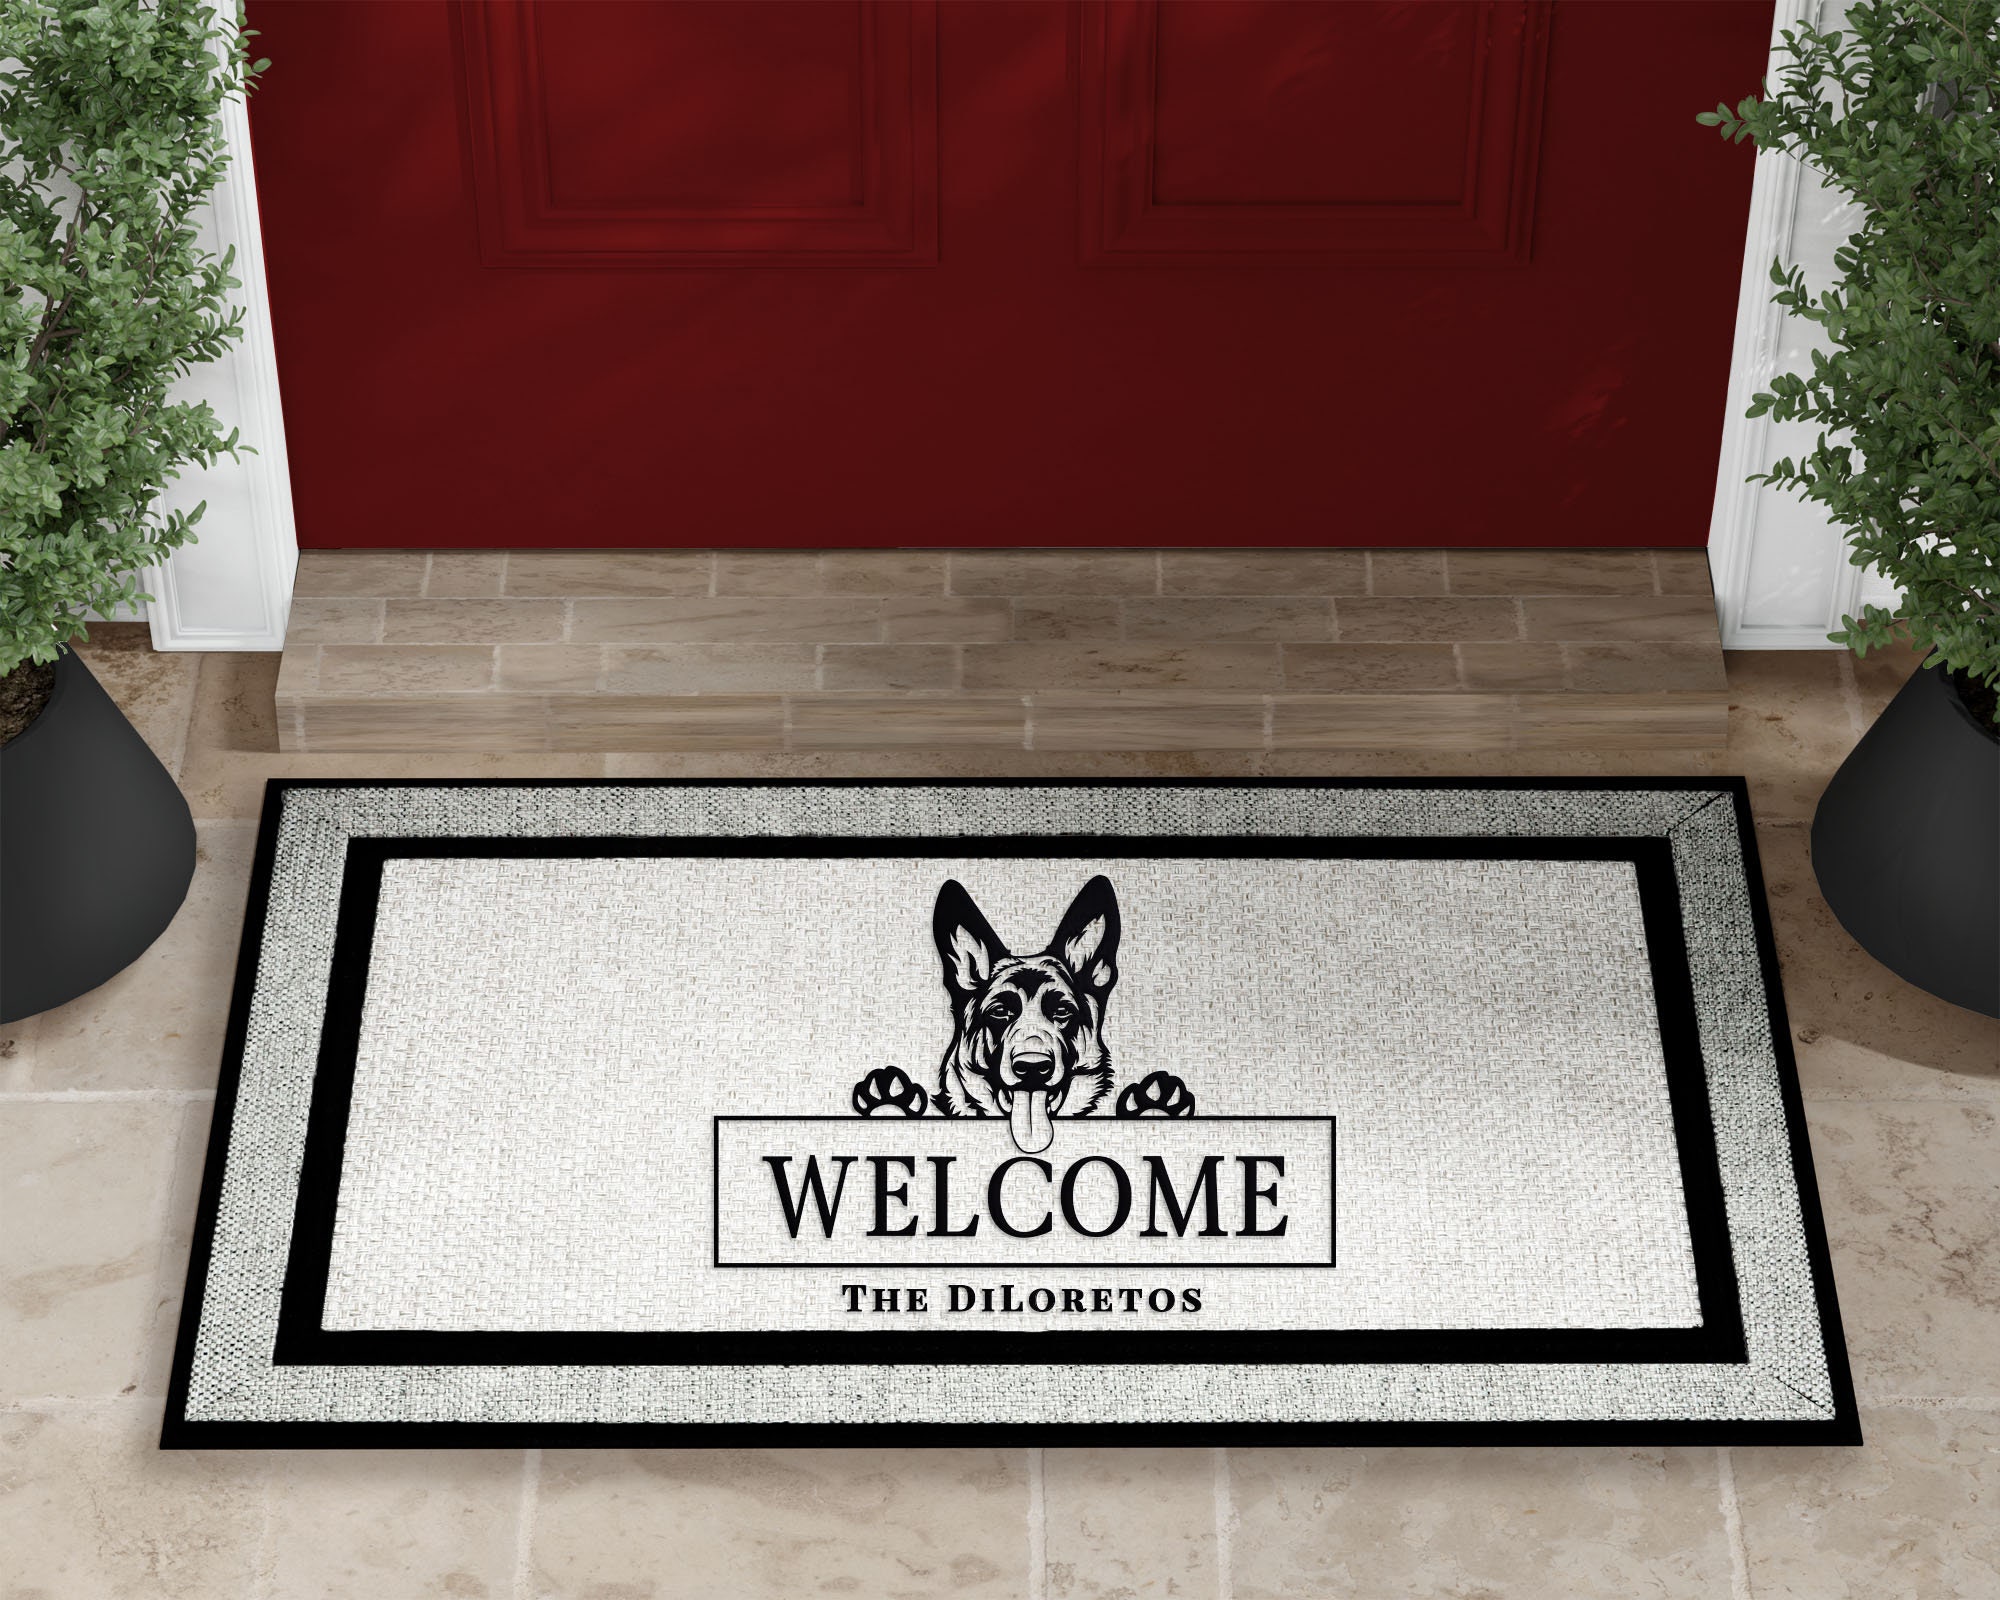 Wilkommen - German Welcome Coir Doormat - standard size